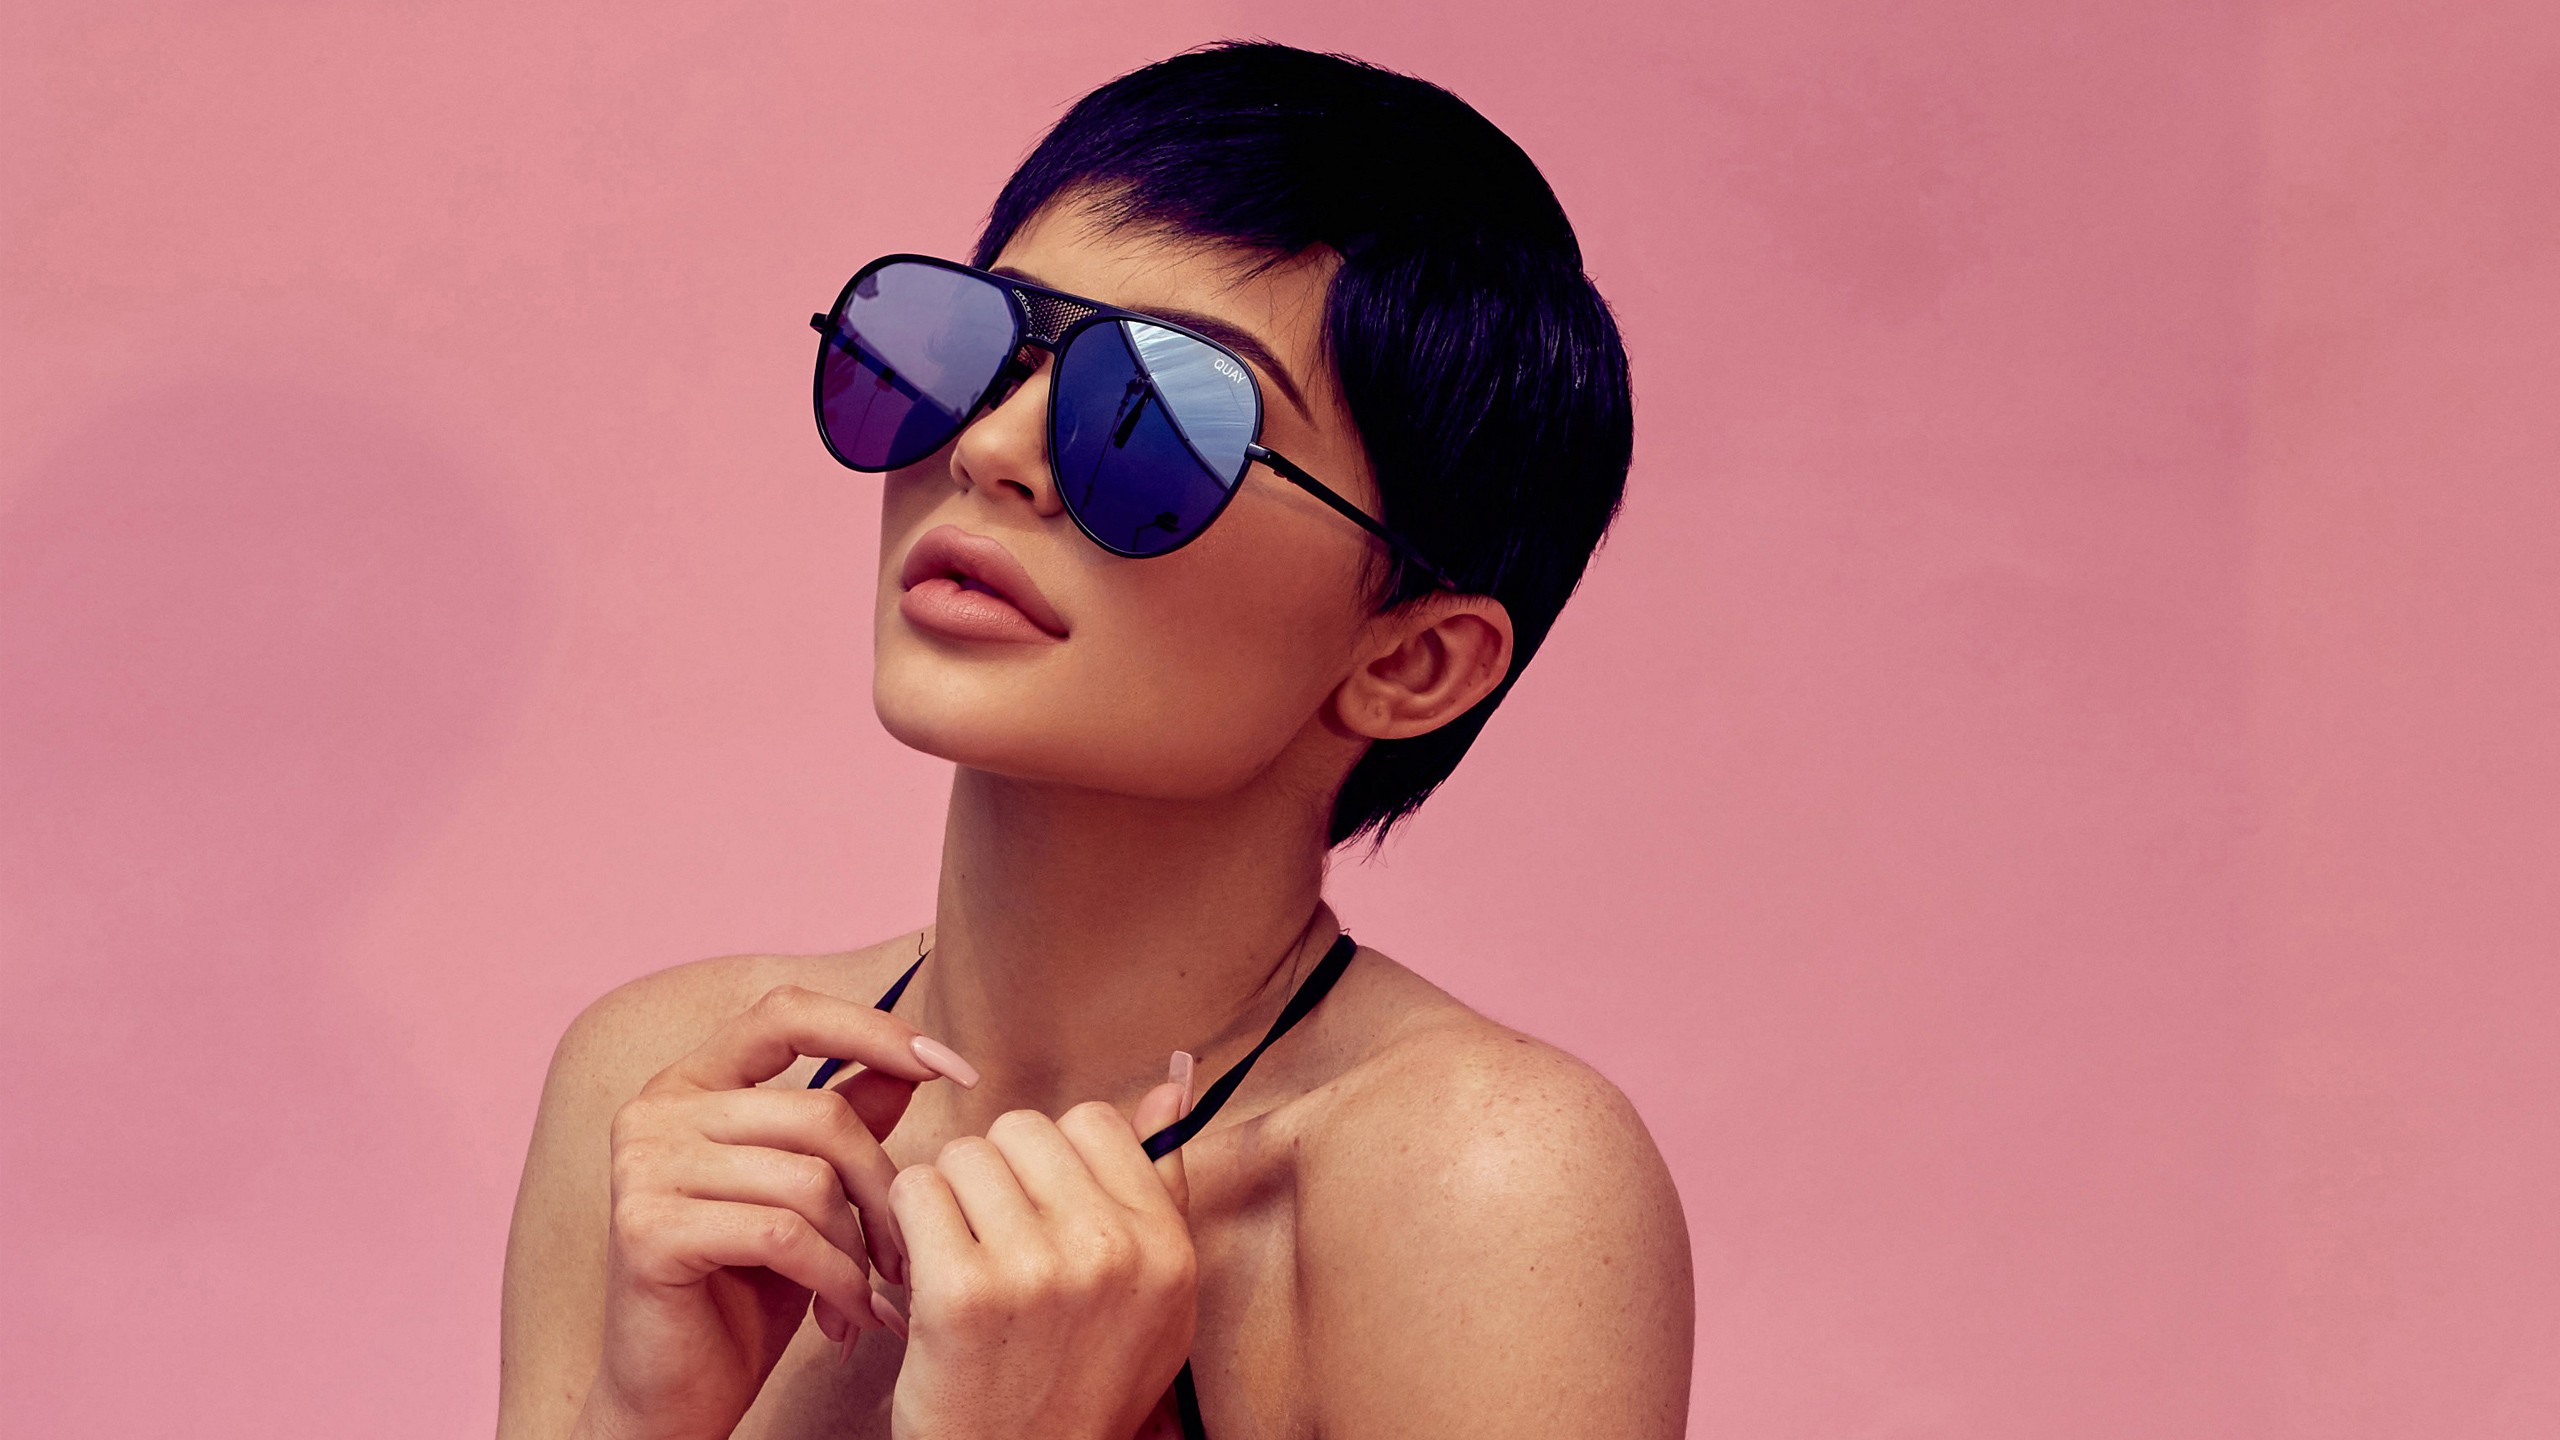 Download mobile wallpaper Sunglasses, Model, Celebrity, Short Hair, Purple Hair, Kylie Jenner for free.